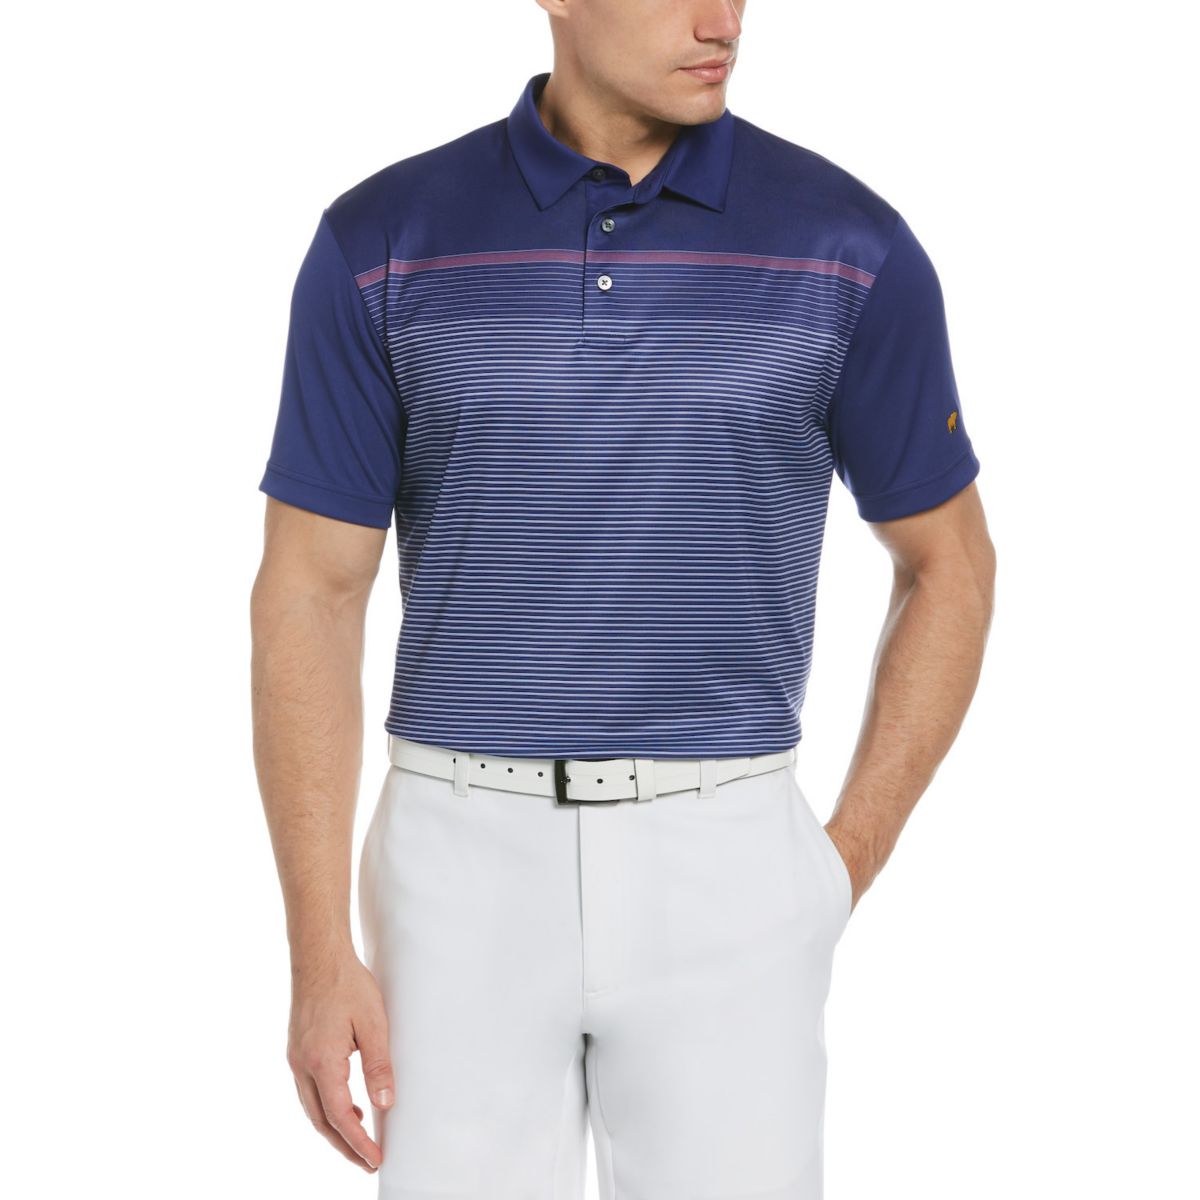 Мужская рубашка-поло для гольфа в полоску классического кроя Jack Nicklaus StayDri для гольфа Performance Jack Nicklaus